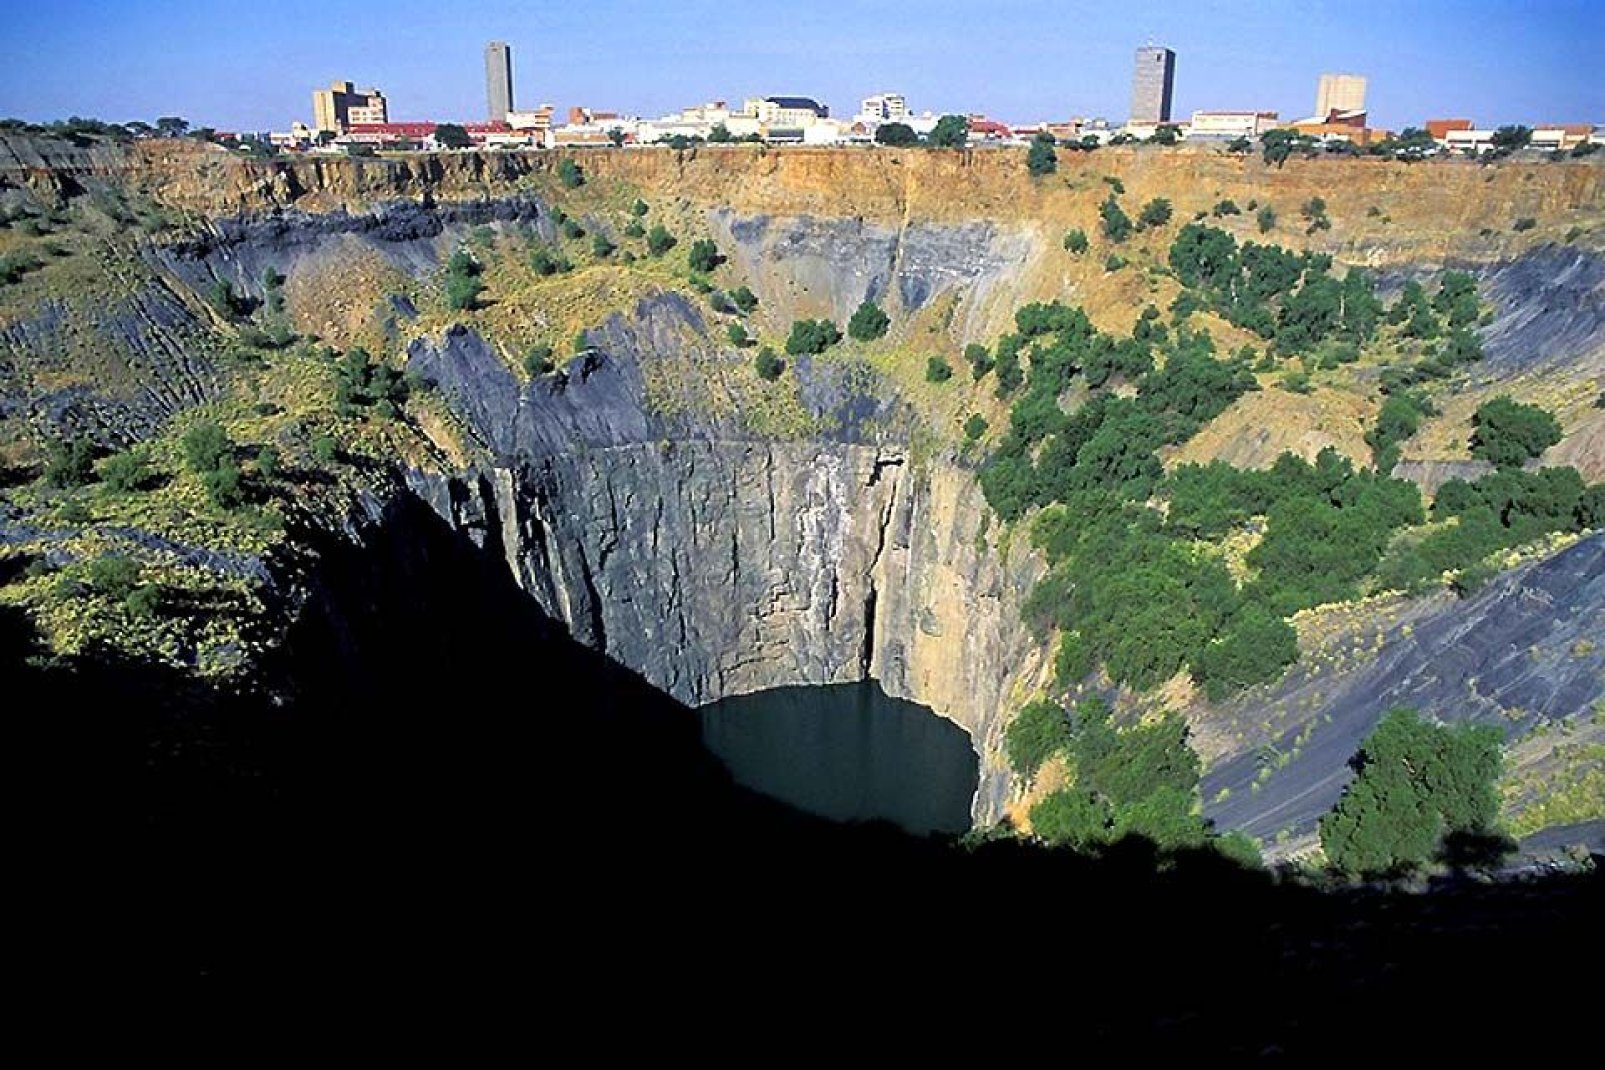 El Big Hole es una antigua mina de Kimberley. En el siglo XIX un niño descubrió el diamante Eureka, lo que desató una auténtica fiebre por ese mineral.